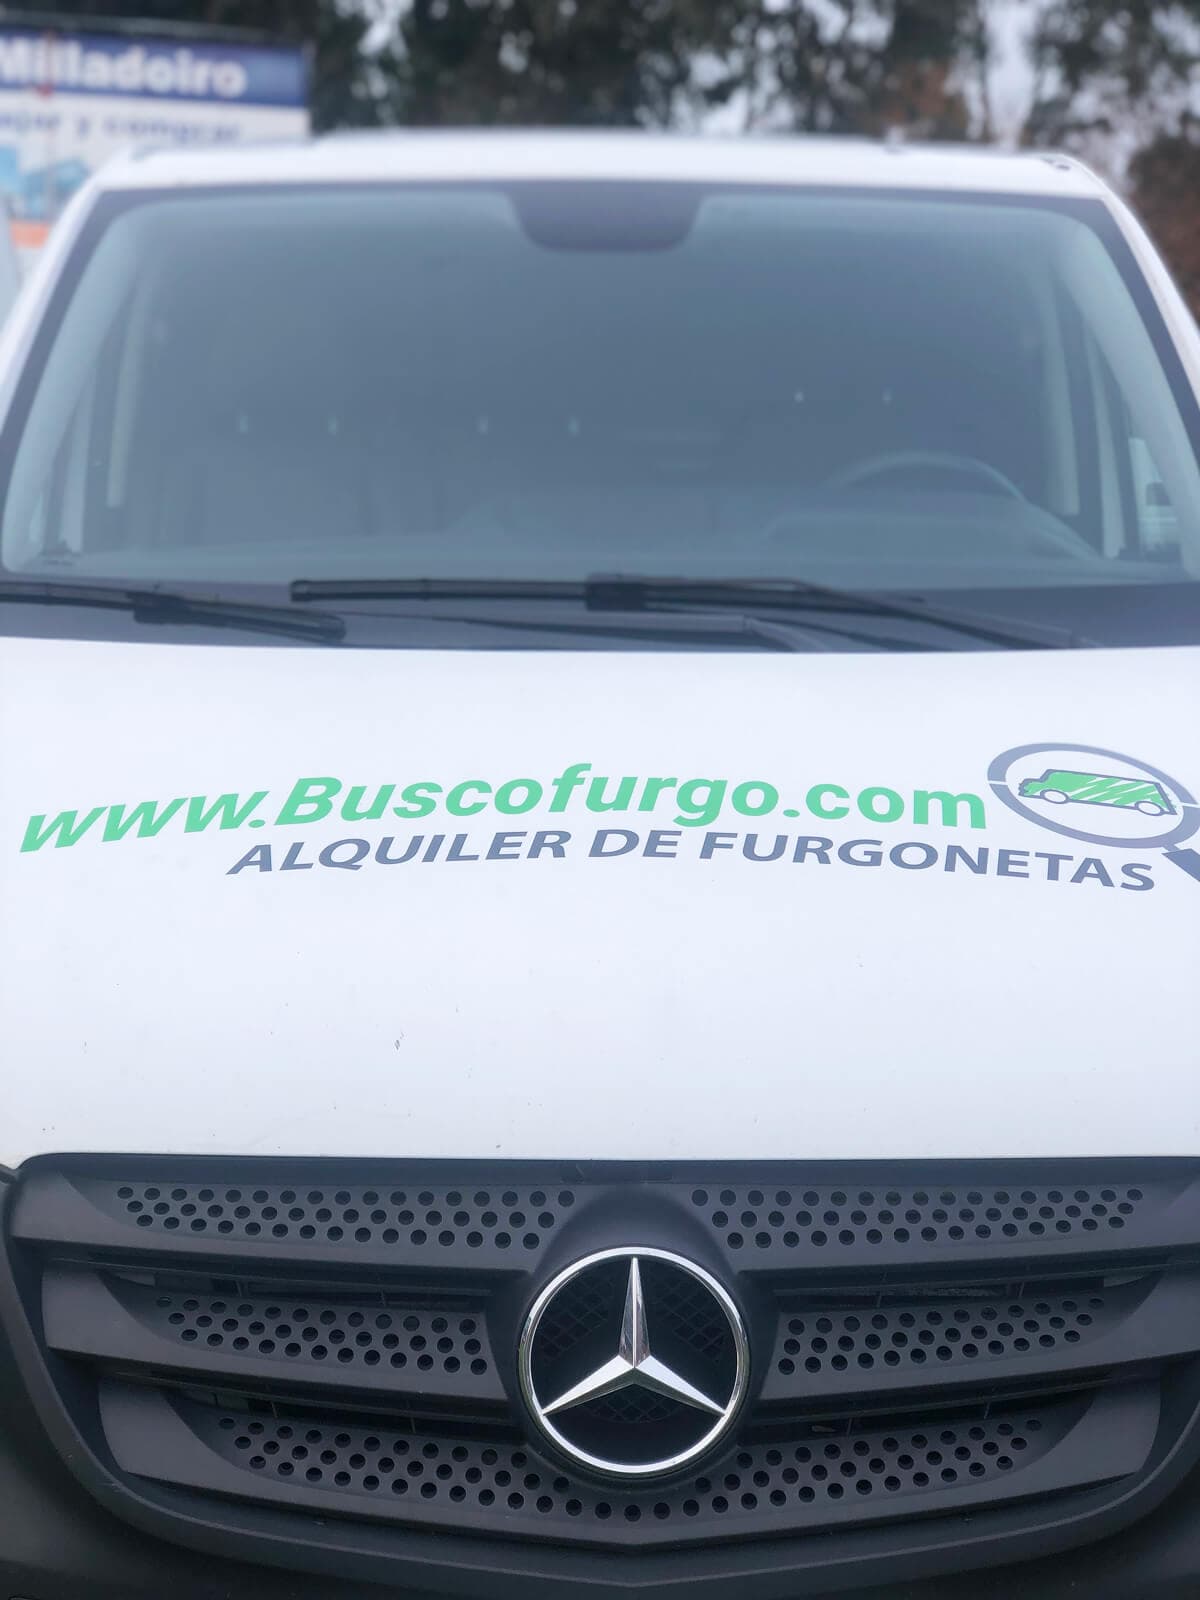 Busco Furgo, la mejor opción en alquiler de vehículos